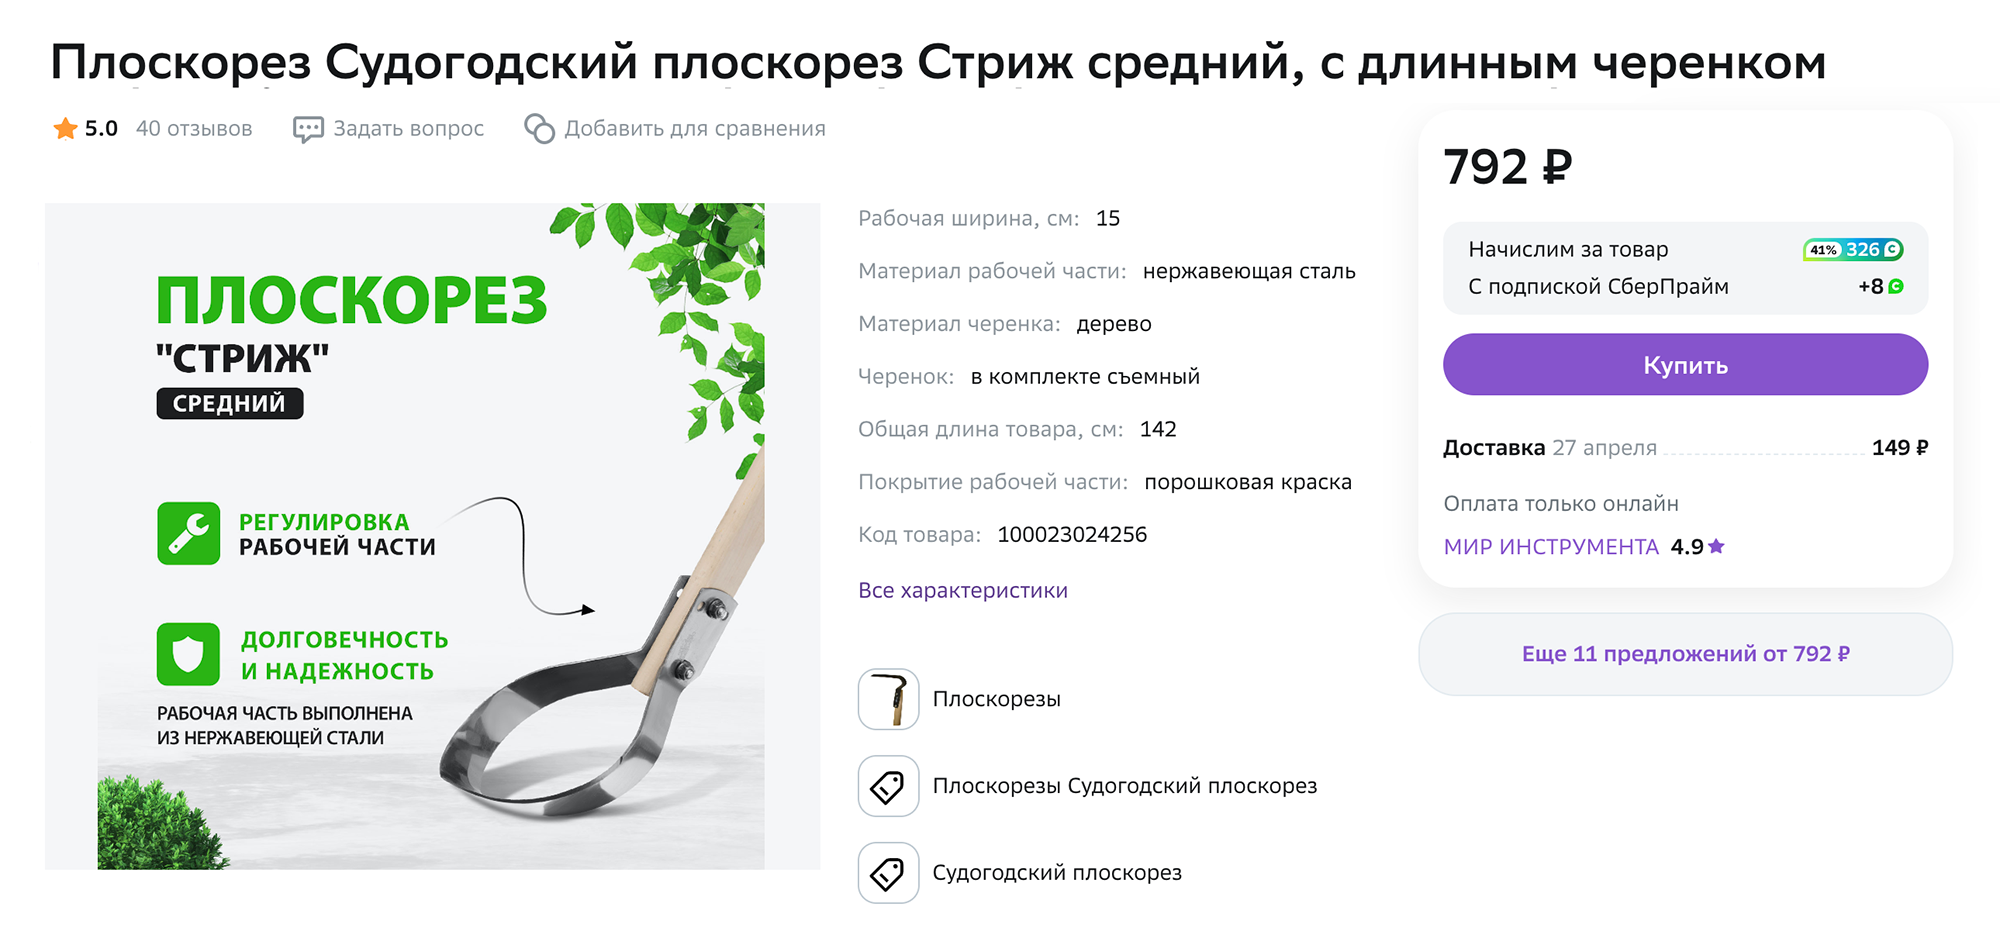 Этим плоскорезом удобно рыхлить землю и убирать сорняки. Источник: megamarket.ru